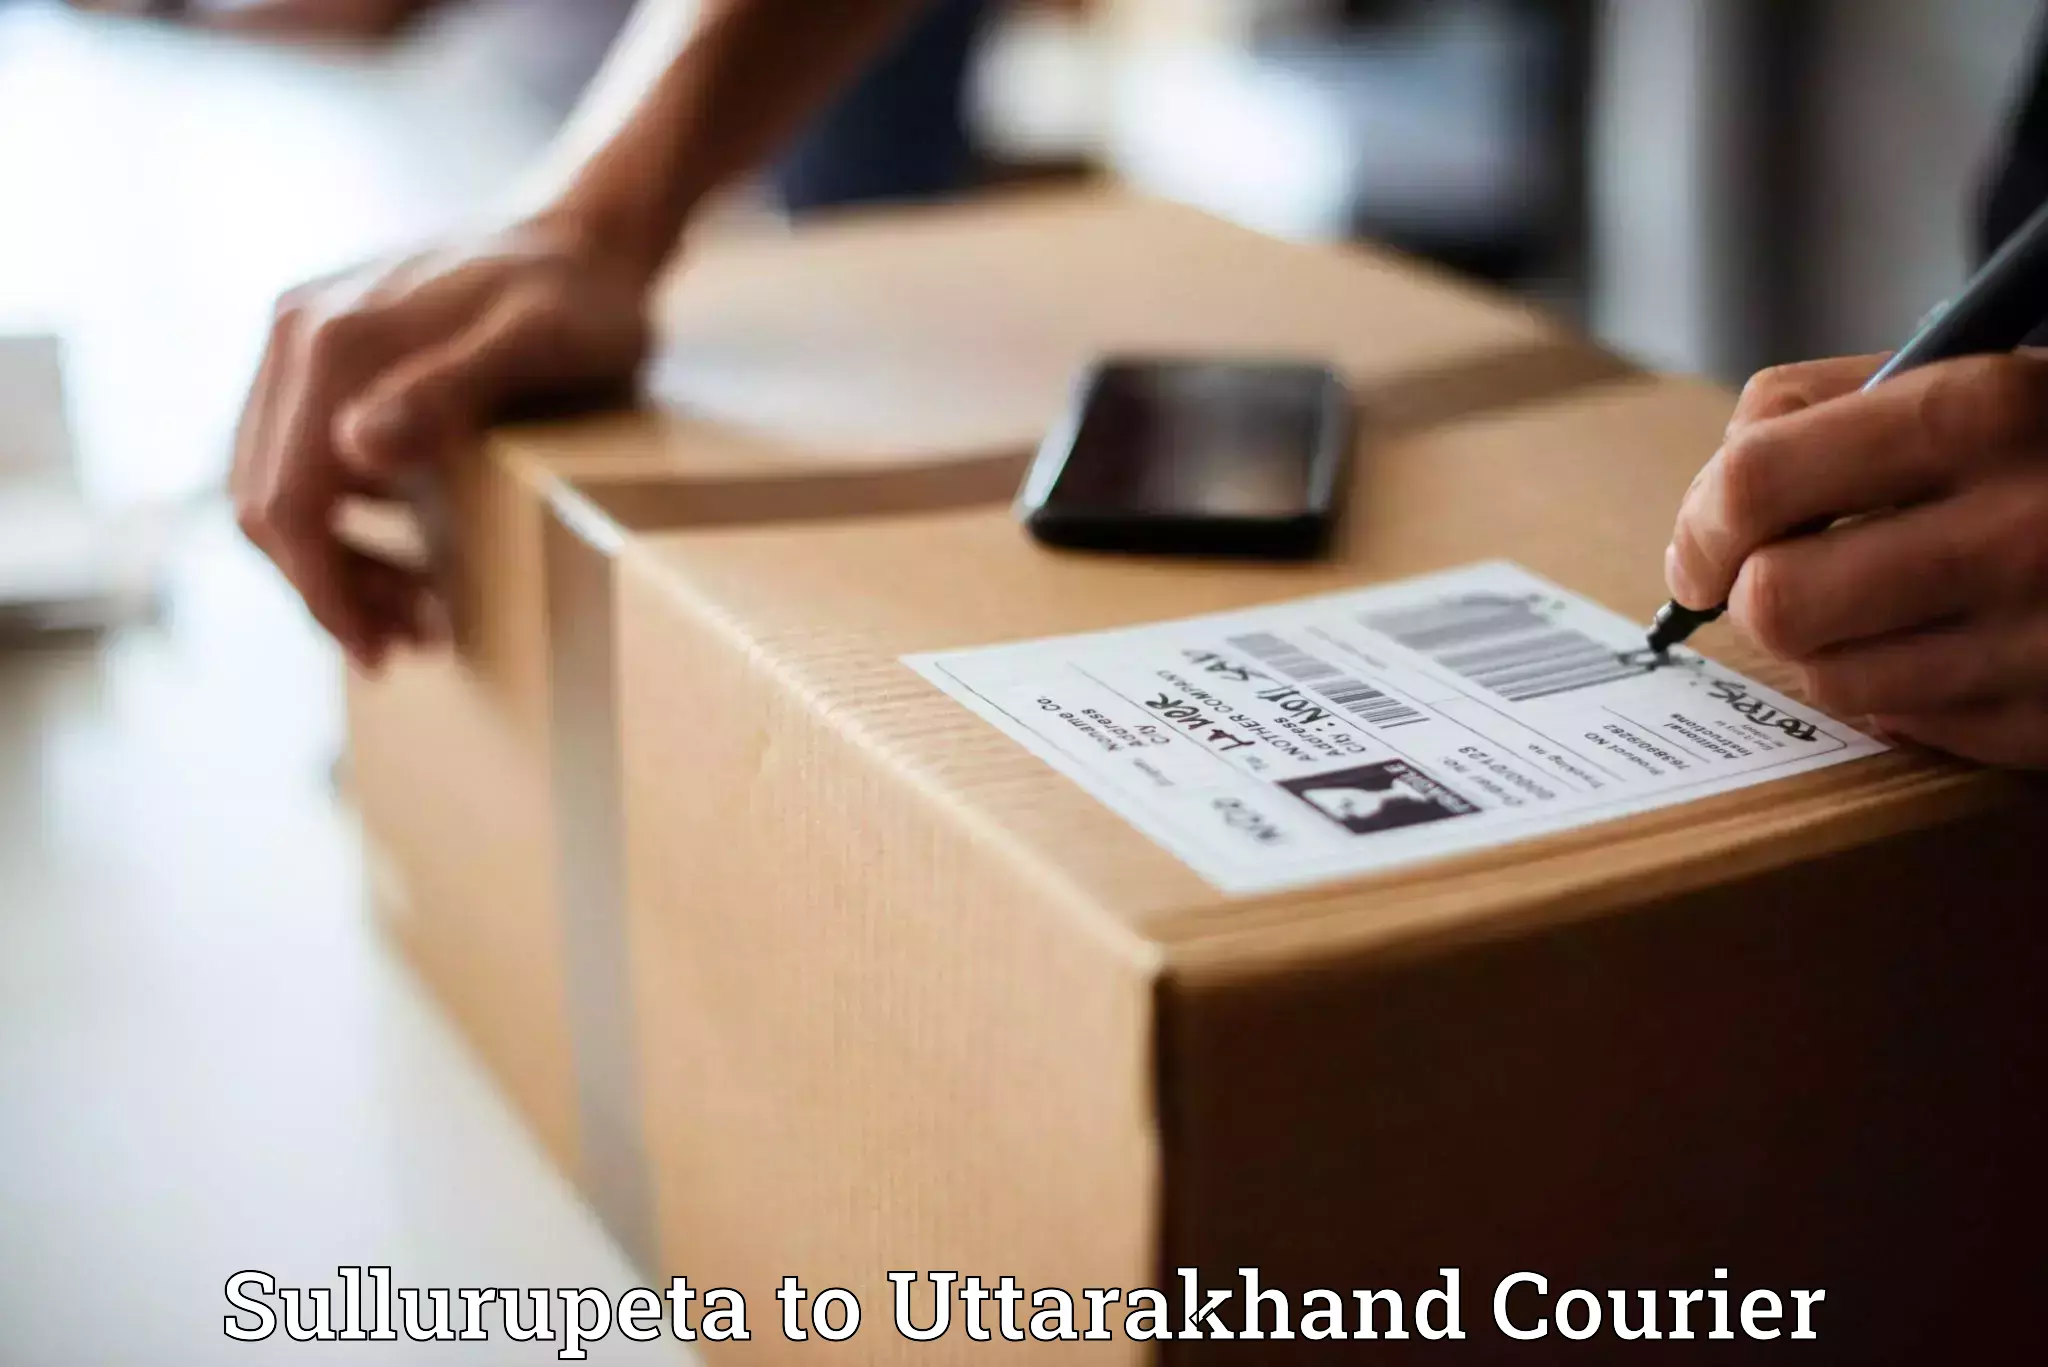 Customizable delivery plans Sullurupeta to Uttarakhand